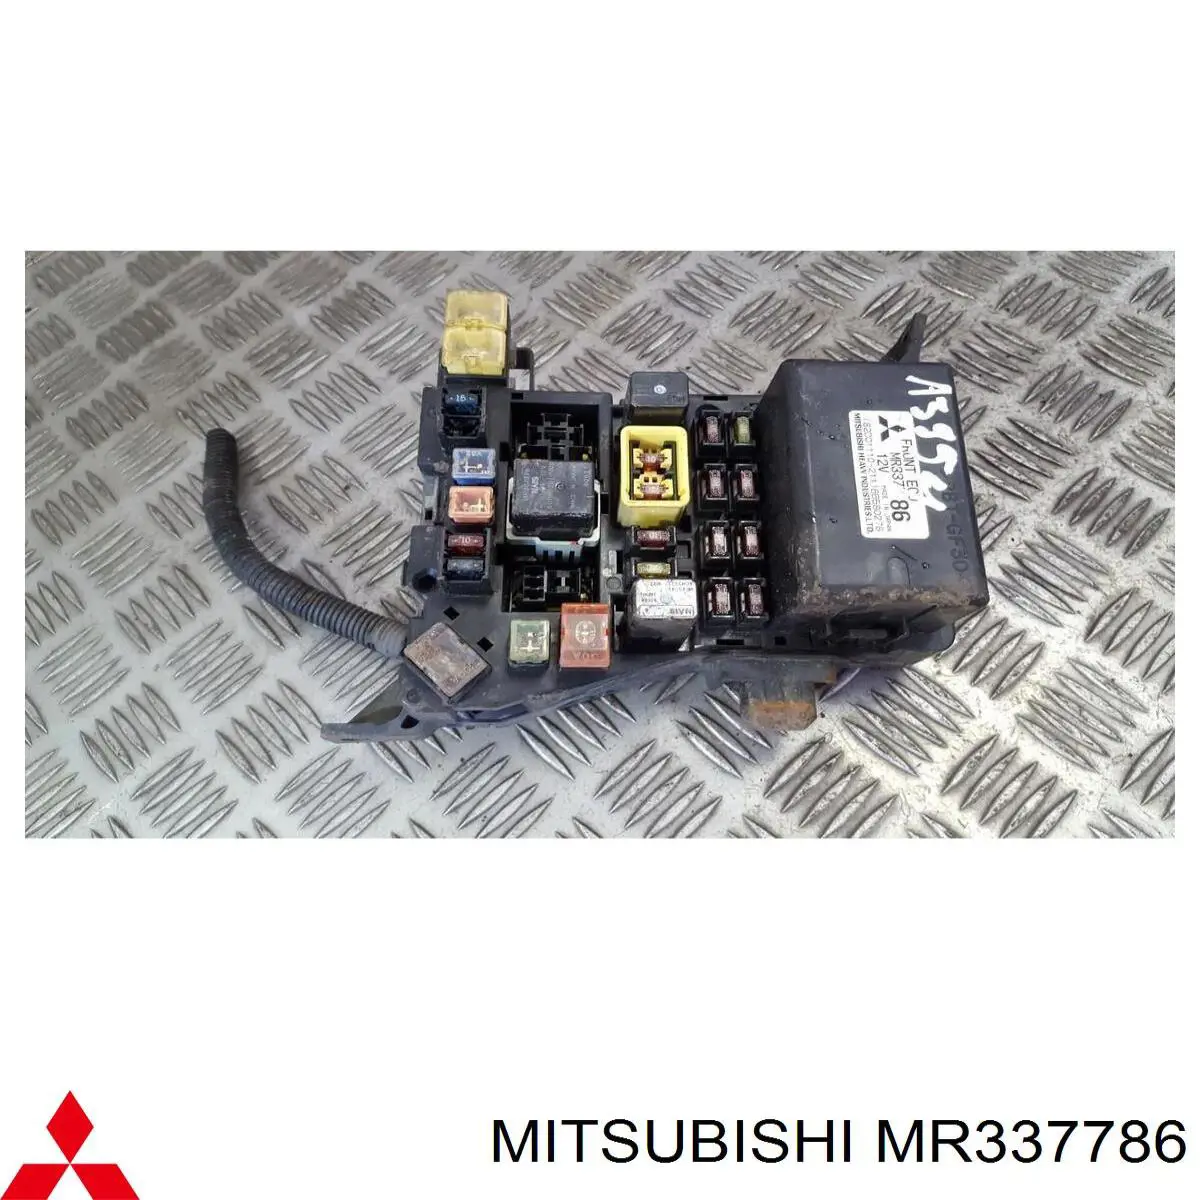 MR515657 Mitsubishi relé, faro